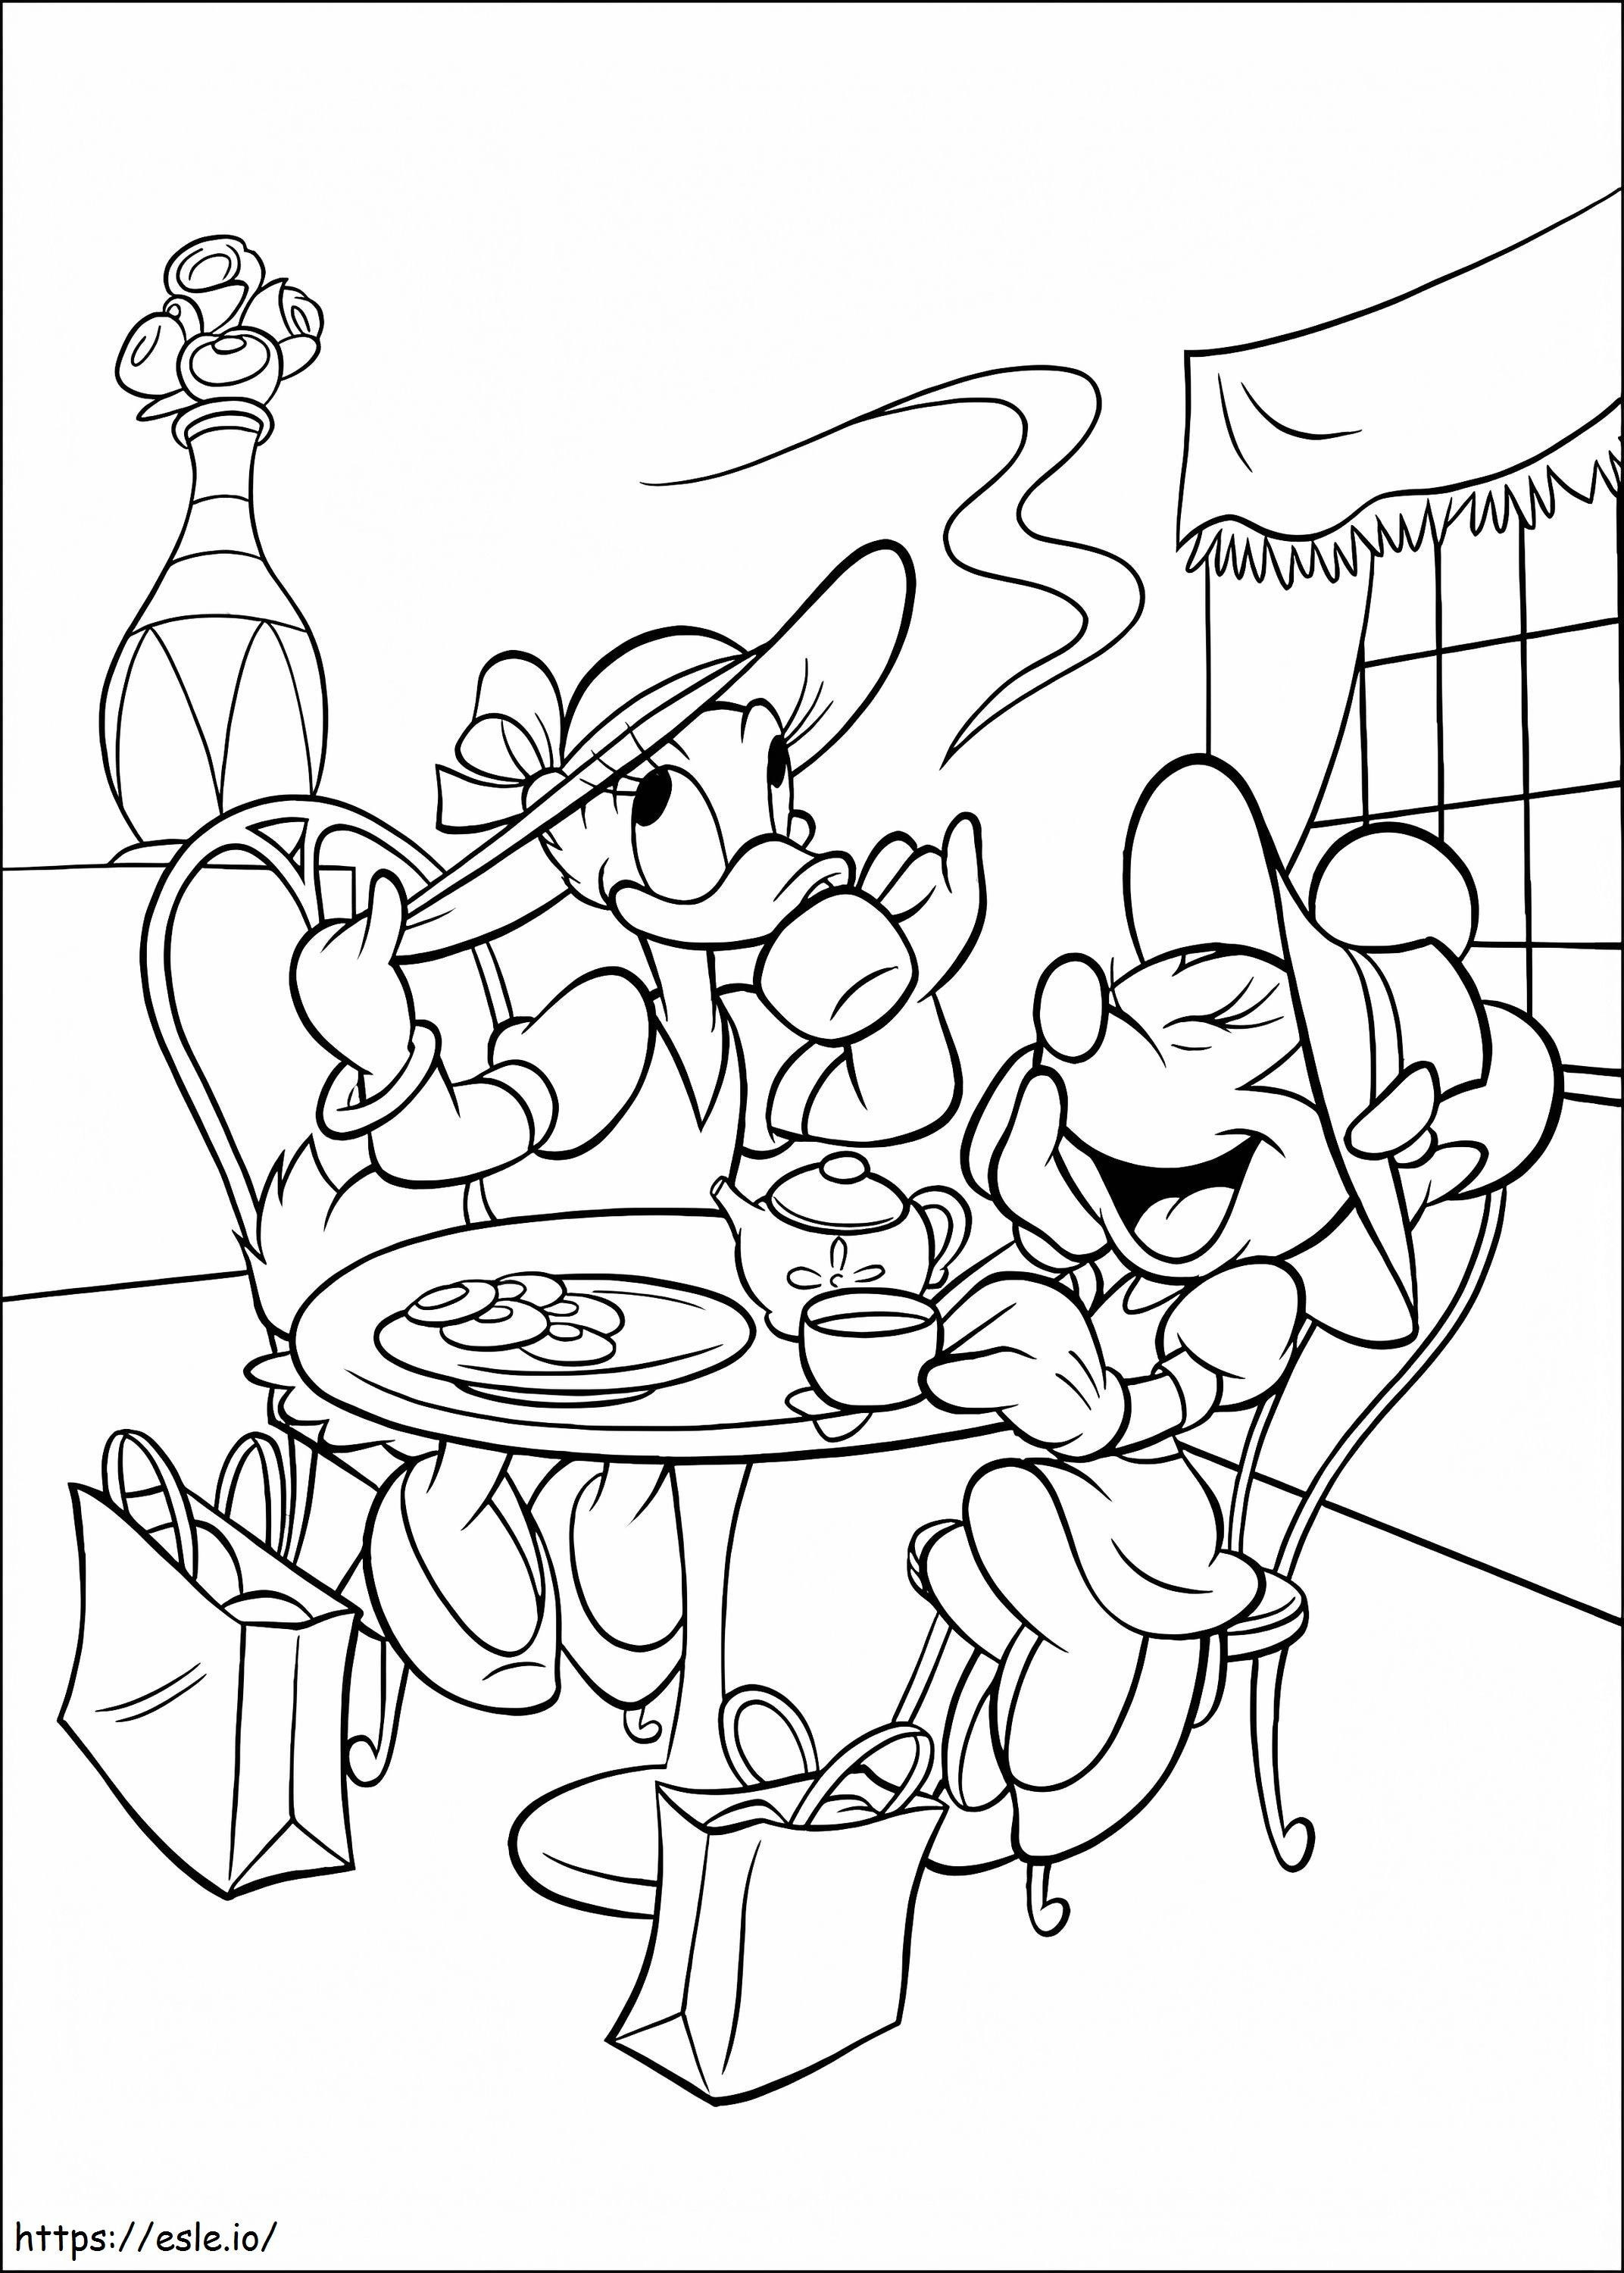 Daisy Duck e Minnie Mouse in festa da colorare